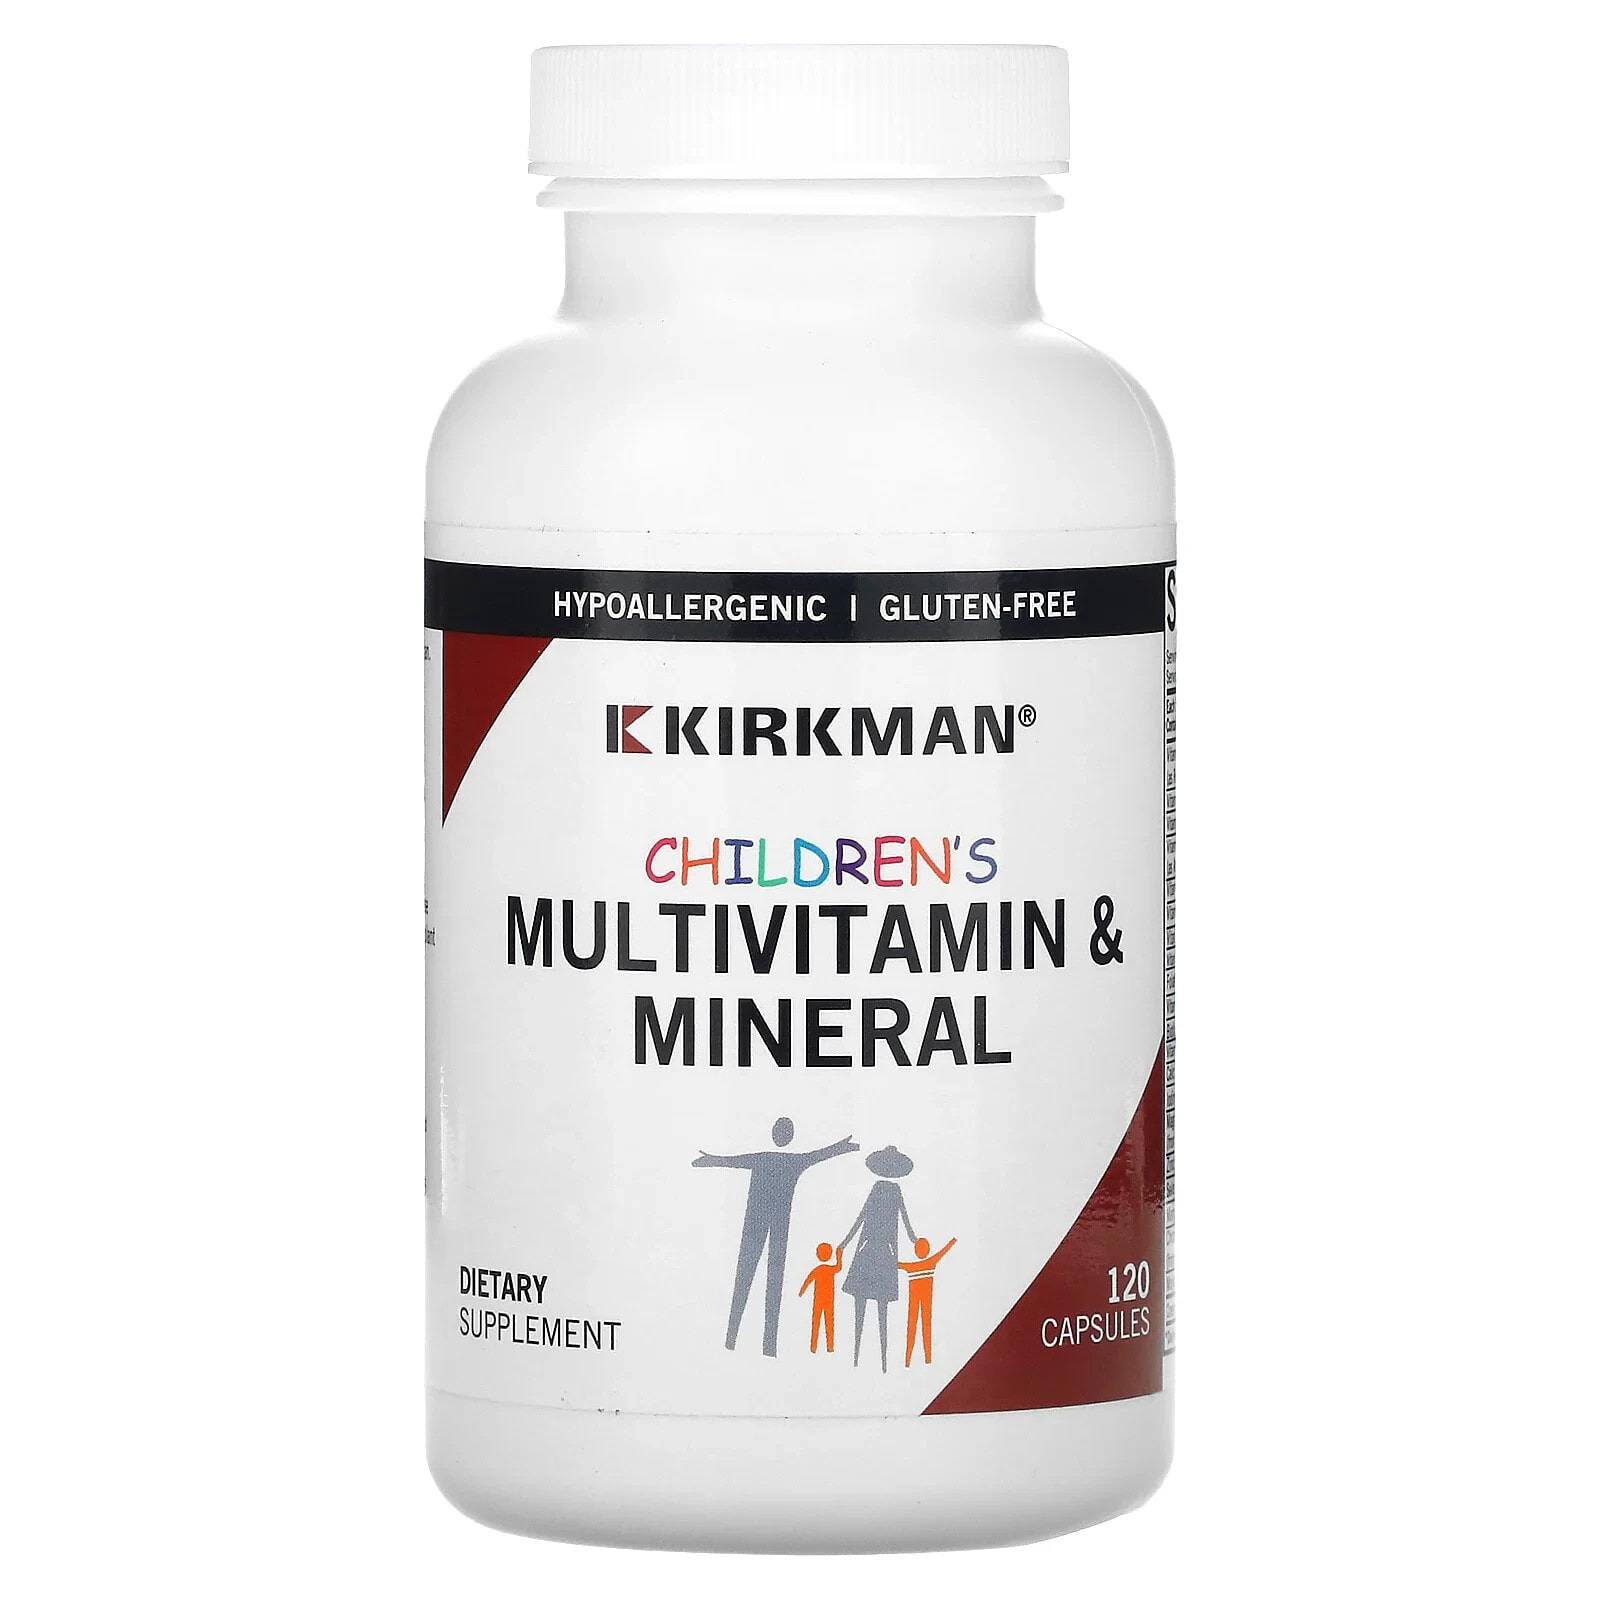 Киркман Лэбс, мультивитамины и минералы для детей, 120 капсул